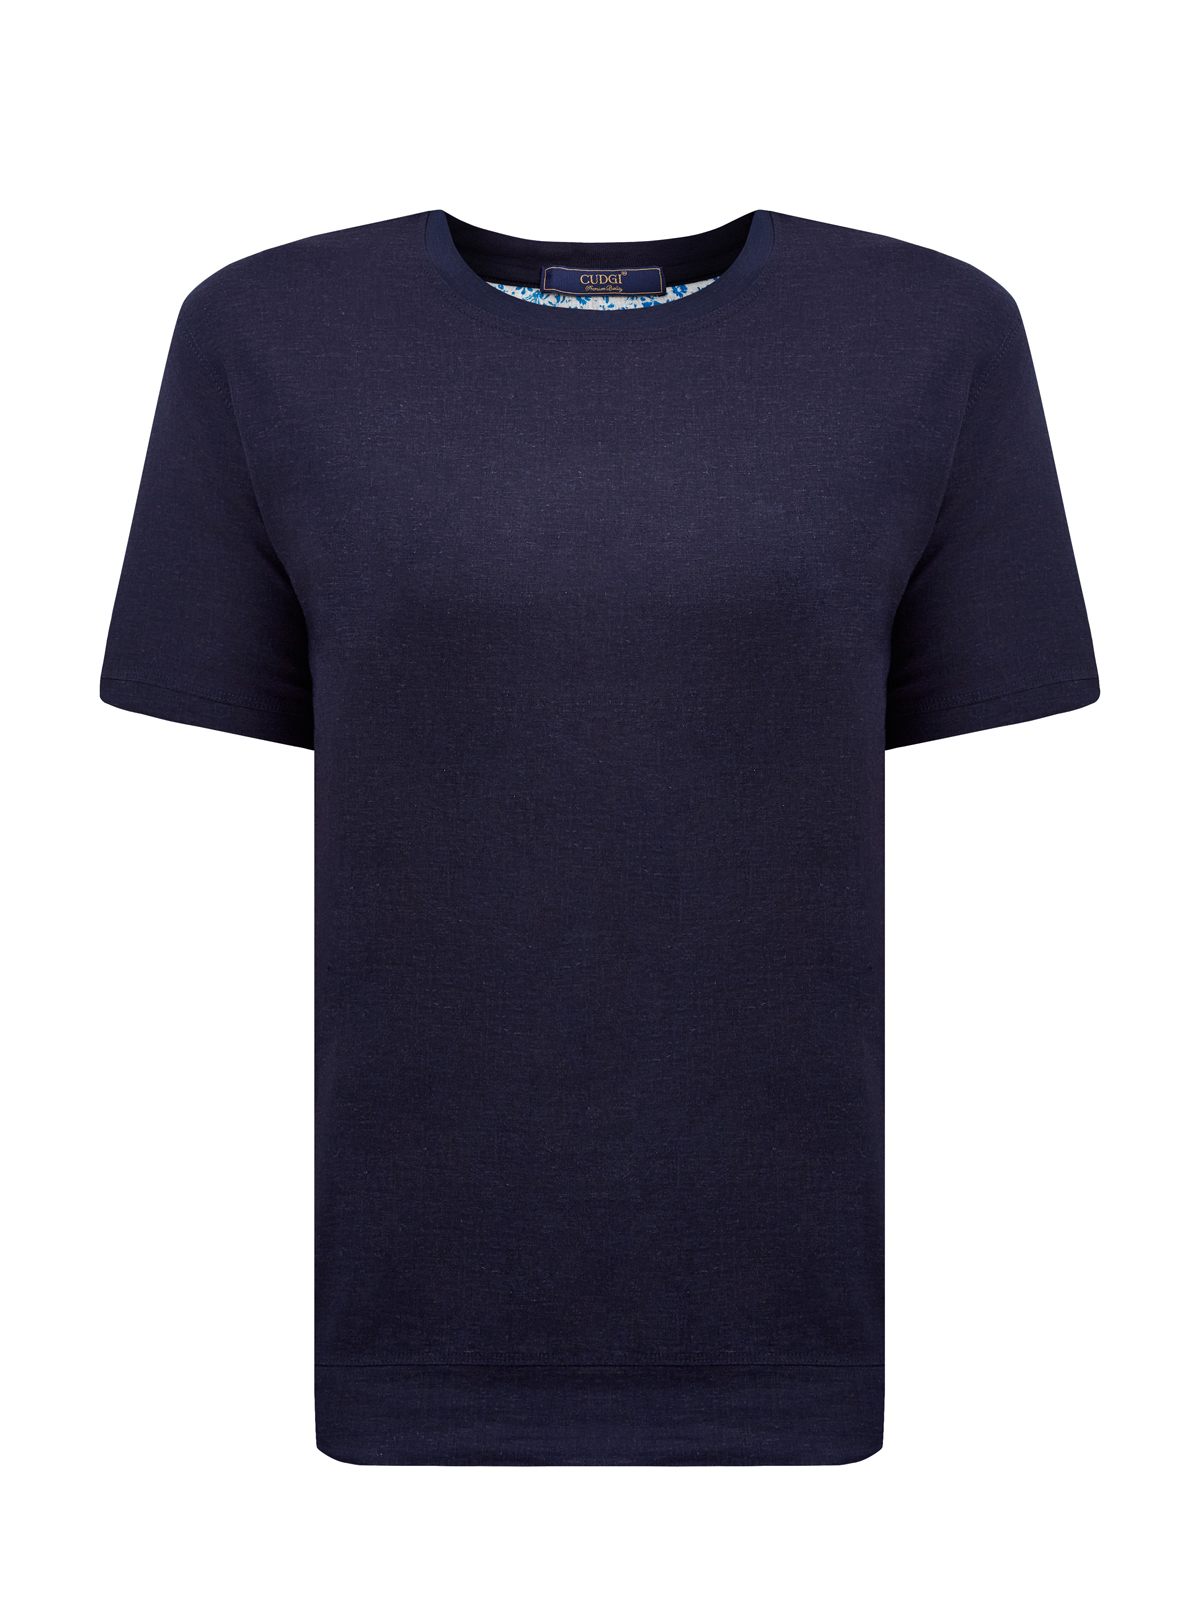 Комбинированная льняная футболка с воротом в рубчик CUDGI, цвет синий, размер 50;52;54;56;48 - фото 1